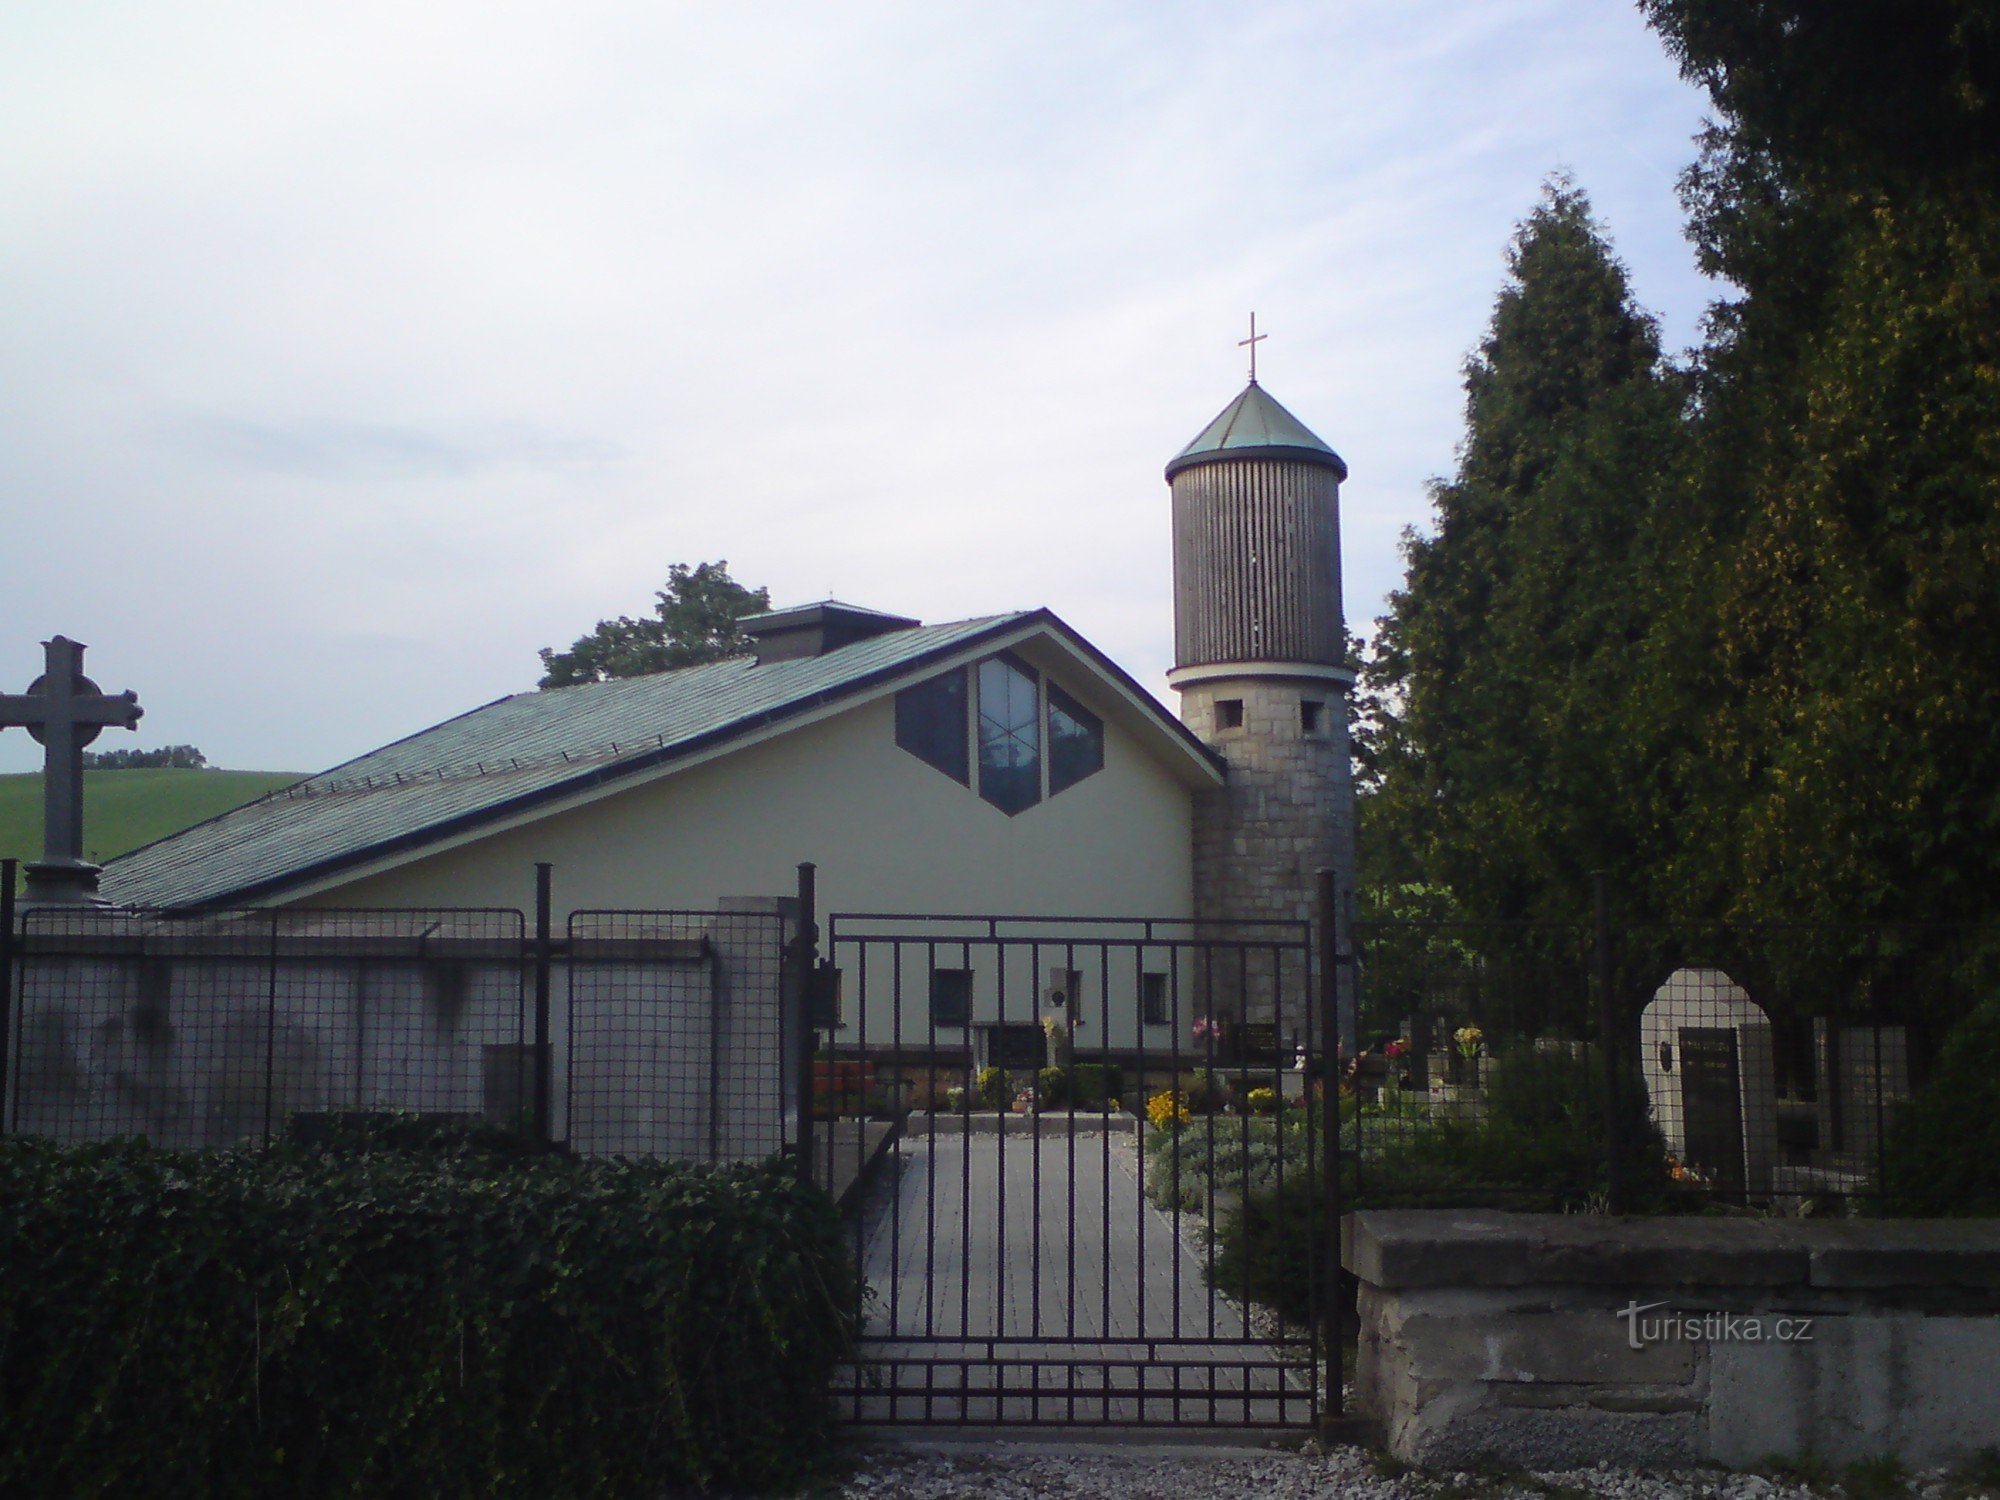 local church